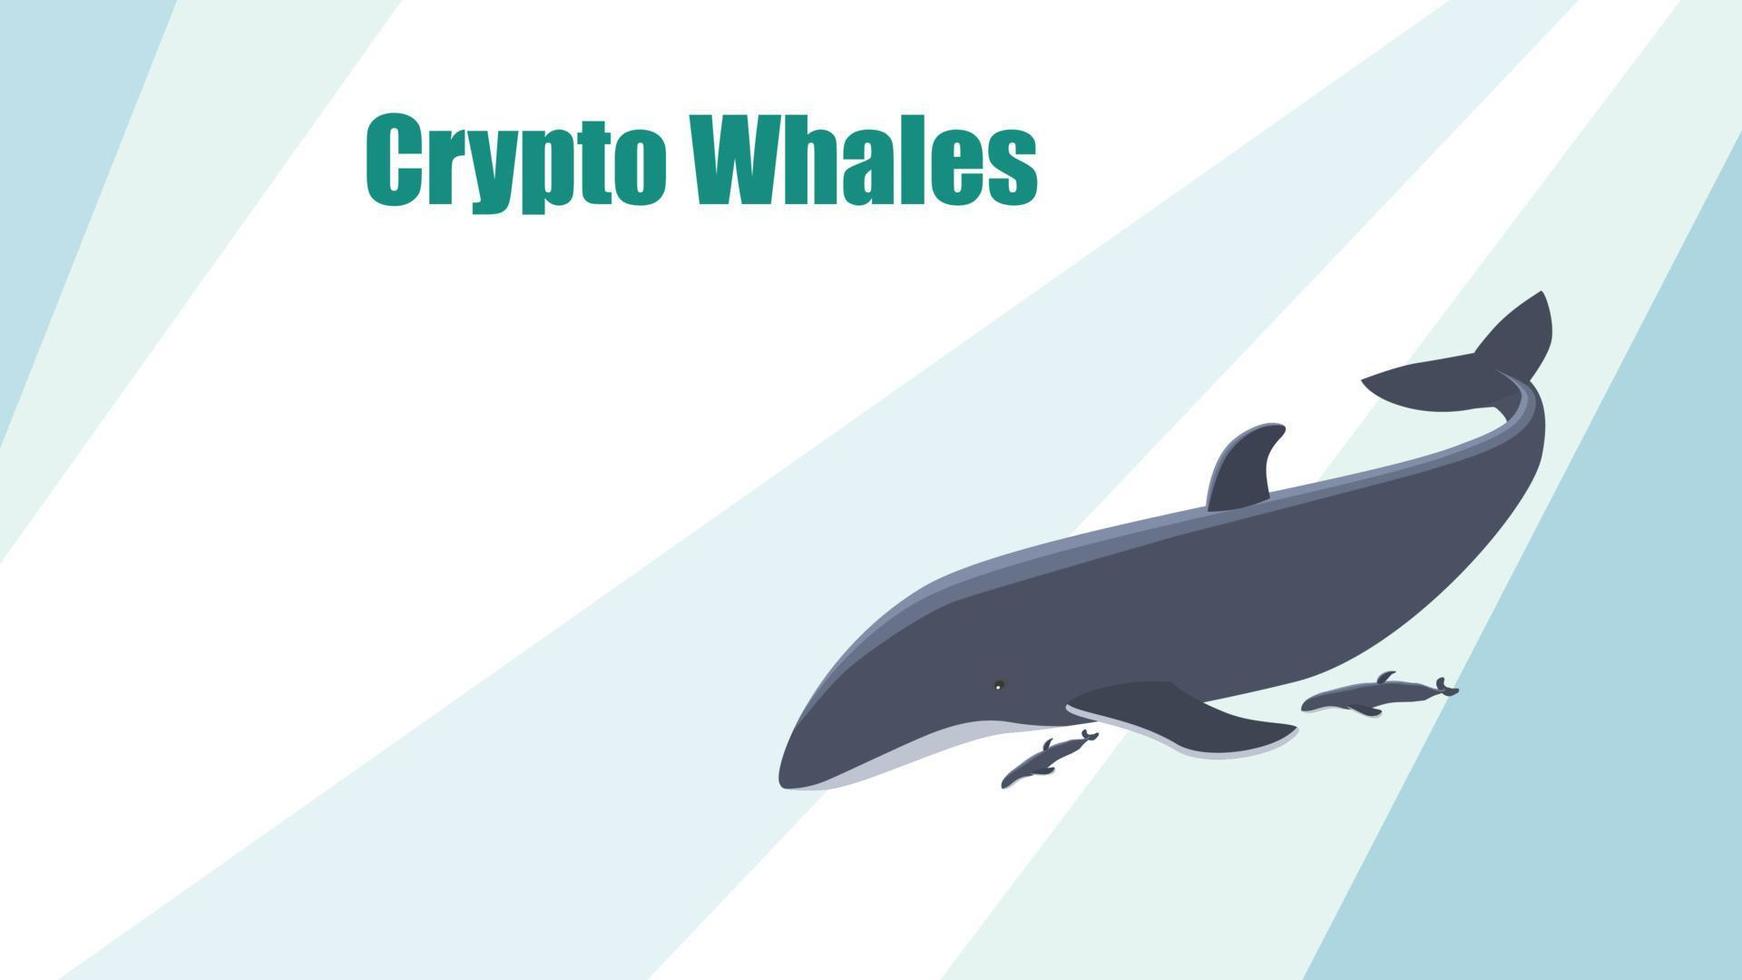 vecteur modèles conception pour site Internet avec une crypto-monnaie thème. bitcoin crypto baleine. rayé conception avec une gros baleine et enfants. modèle pour site Internet ou nouvelles illustration. eps dix.